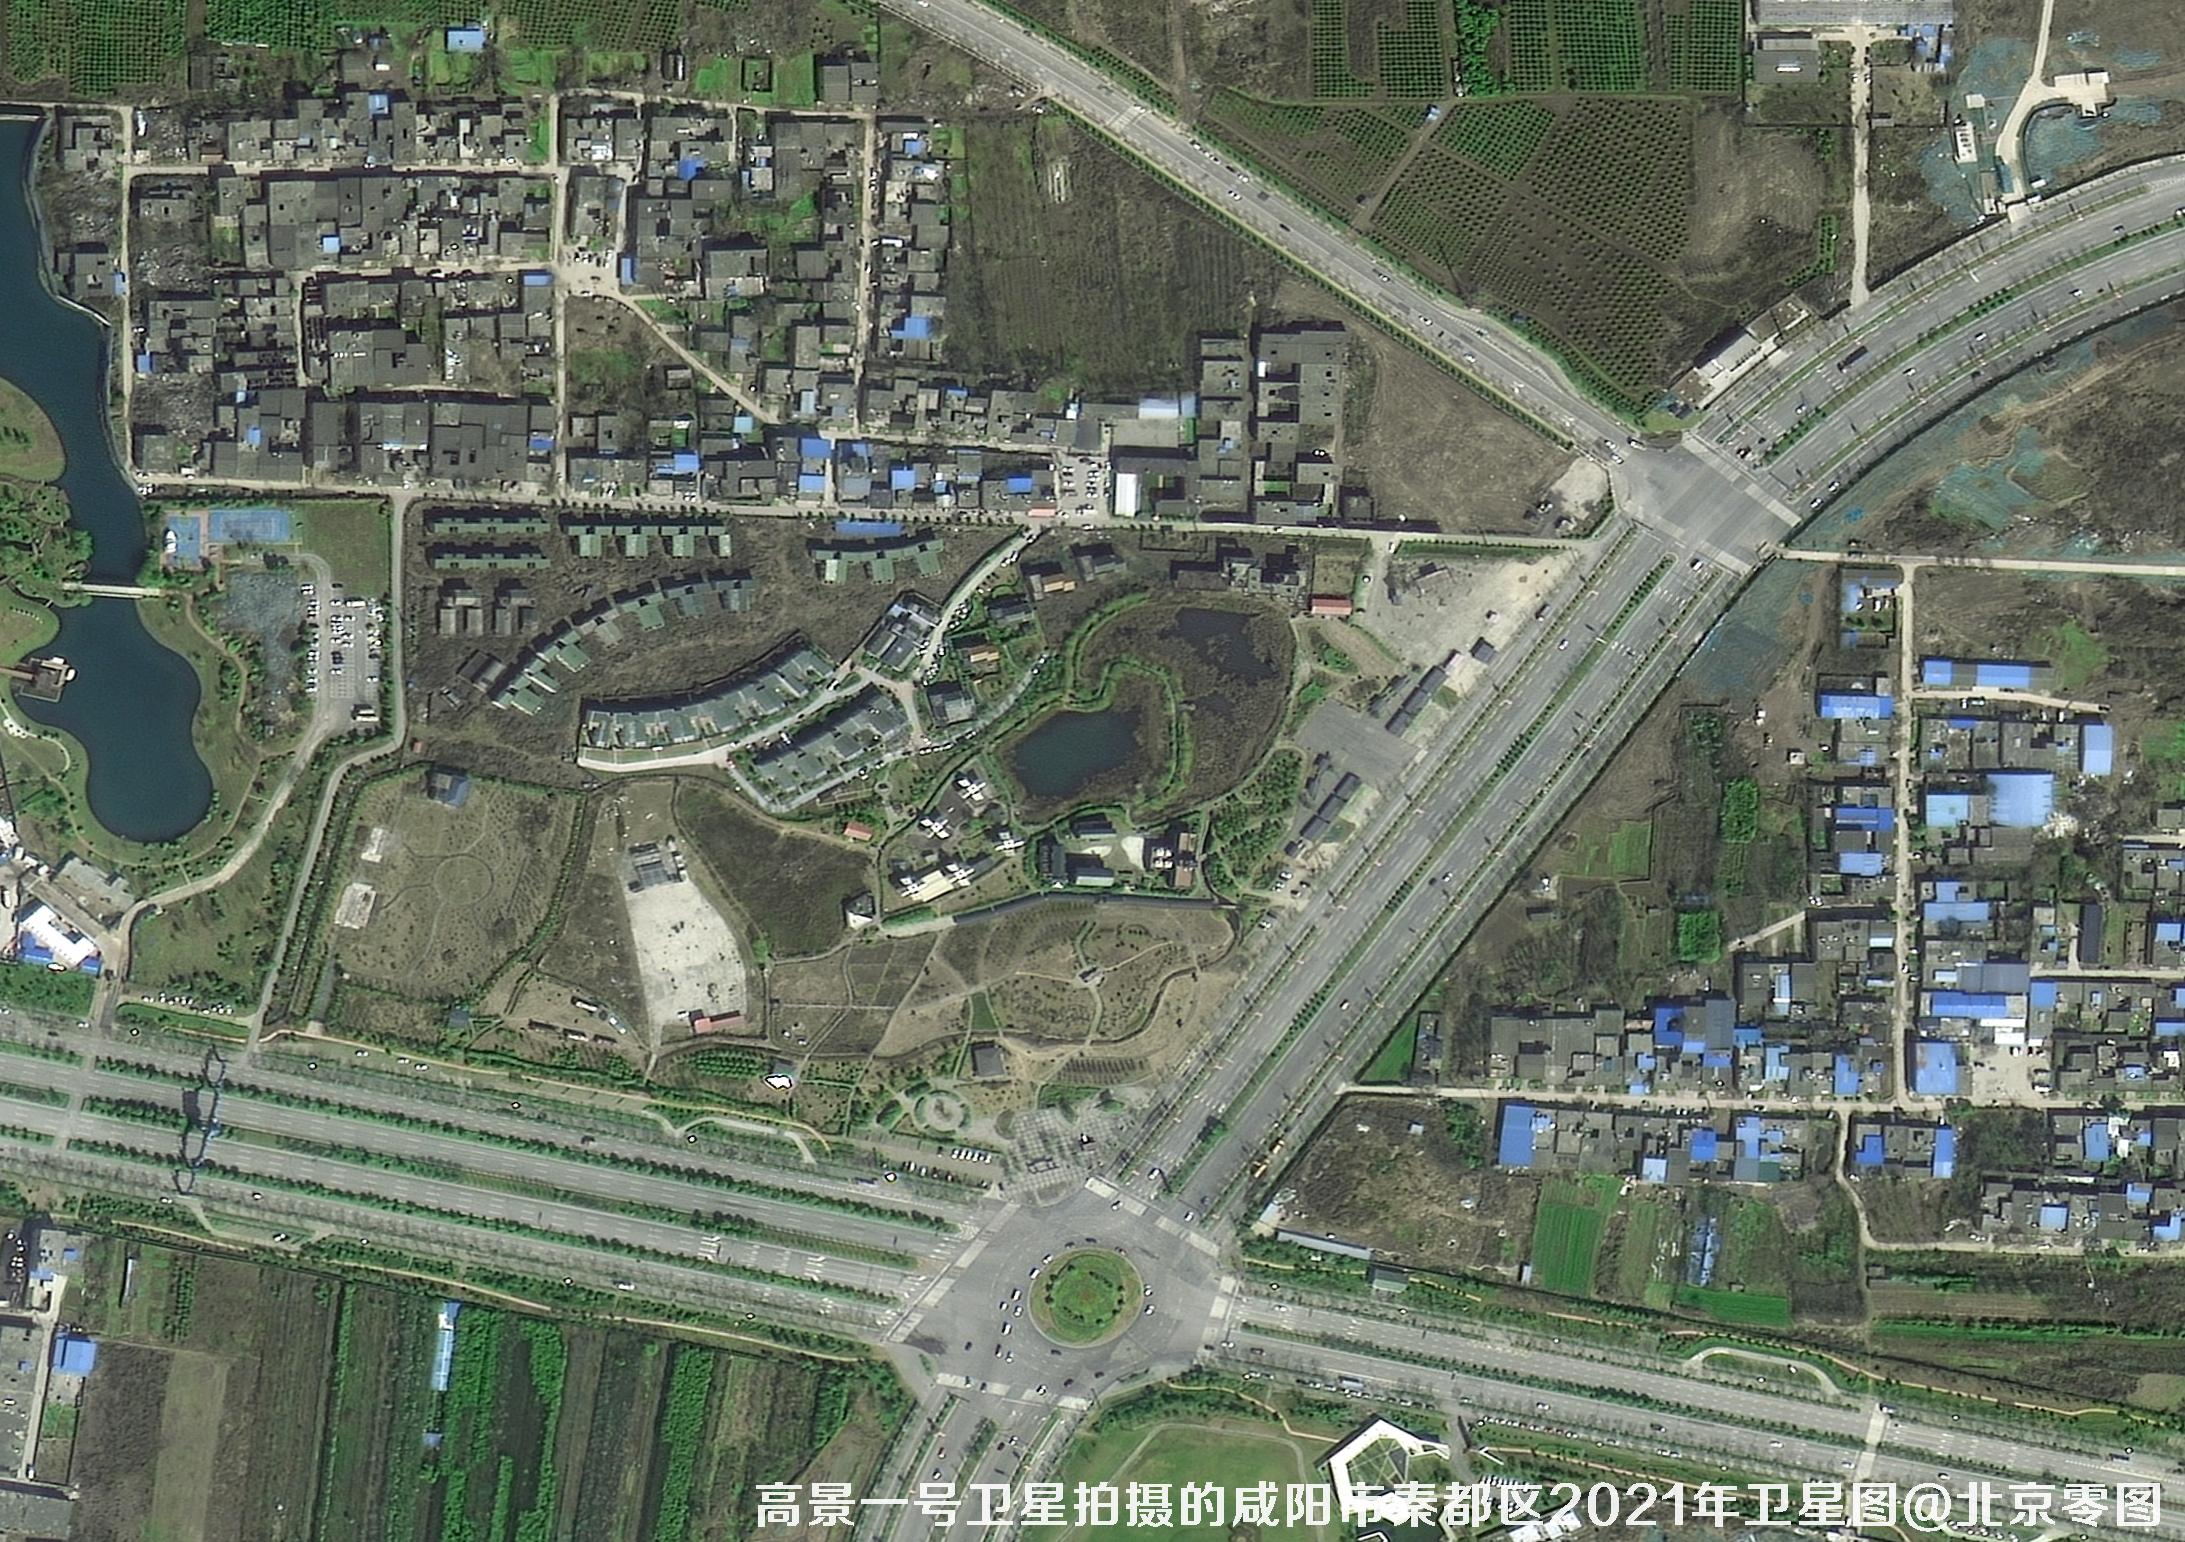 国产0.5米高景一号卫星拍摄的高清图片